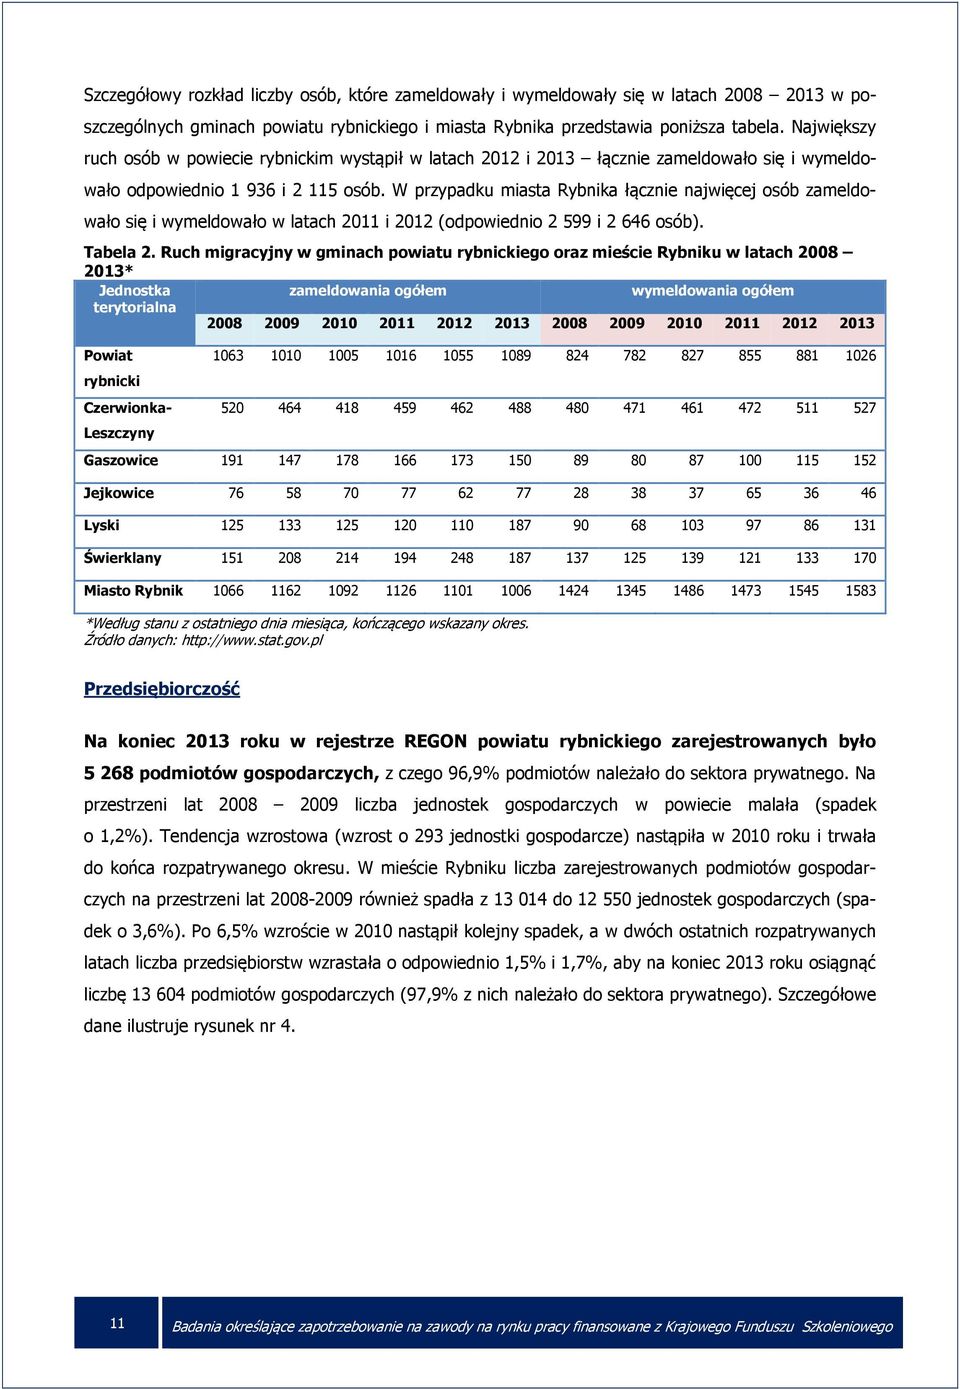 W przypadku miasta Rybnika łącznie najwięcej osób zameldowało się i wymeldowało w latach 2011 i 2012 (odpowiednio 2 599 i 2 646 osób). Tabela 2.